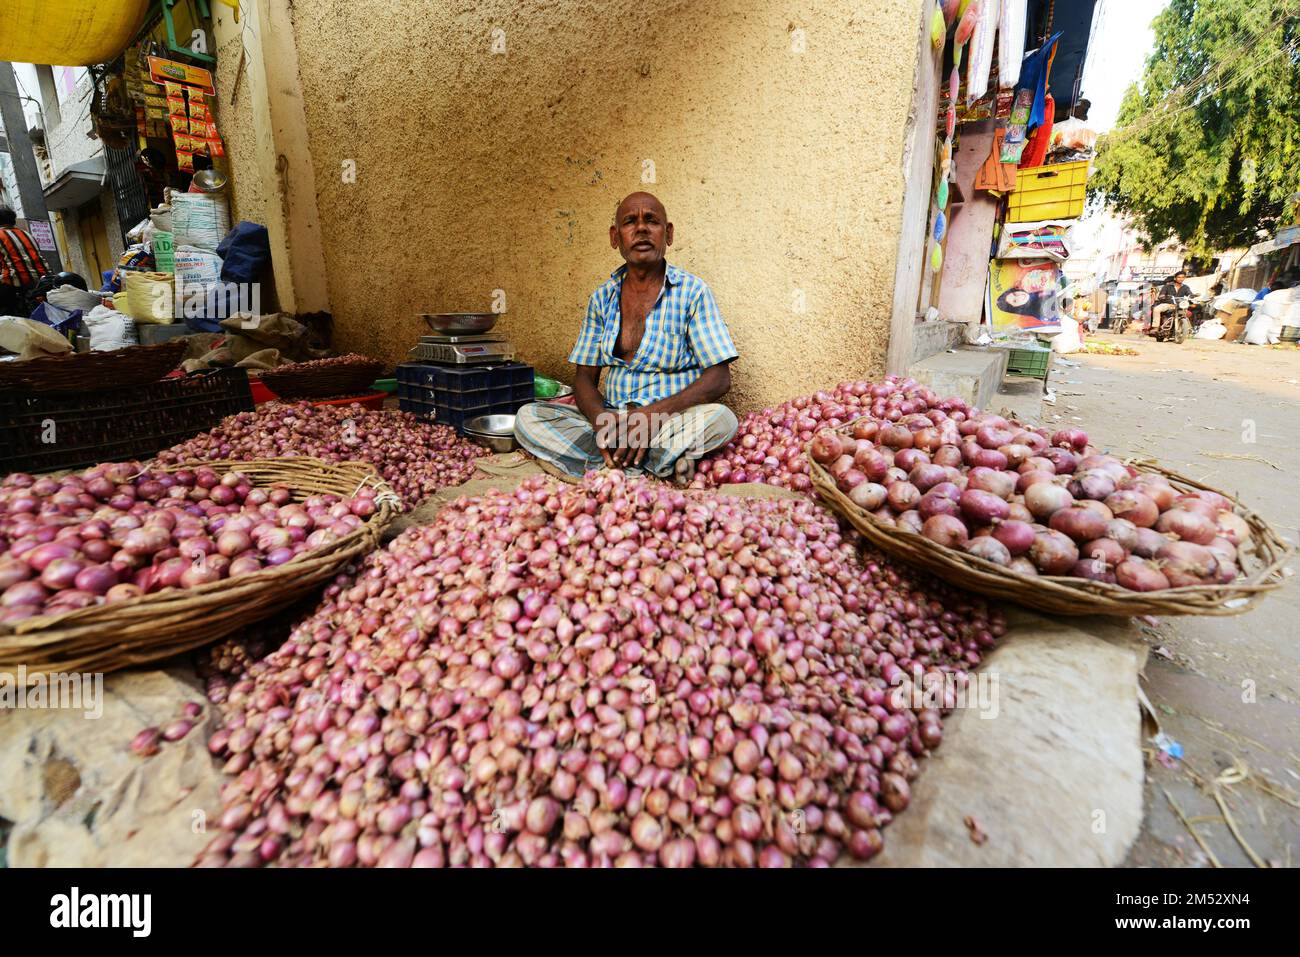 An Onion vendor in the market in Madurai, India. Stock Photo